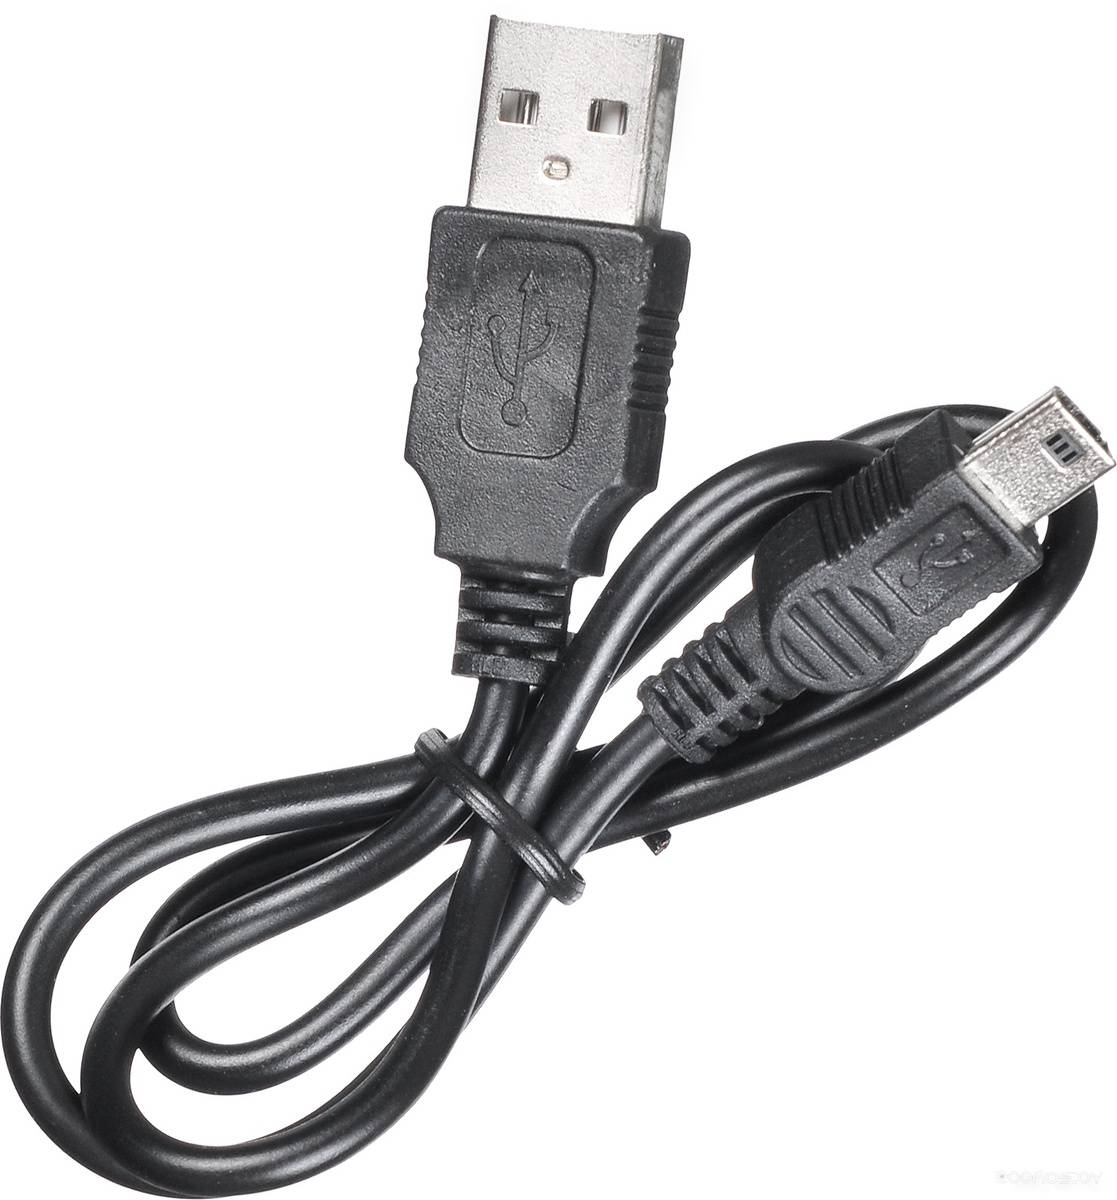 USB- Buro BU-HUB7-U2.0     